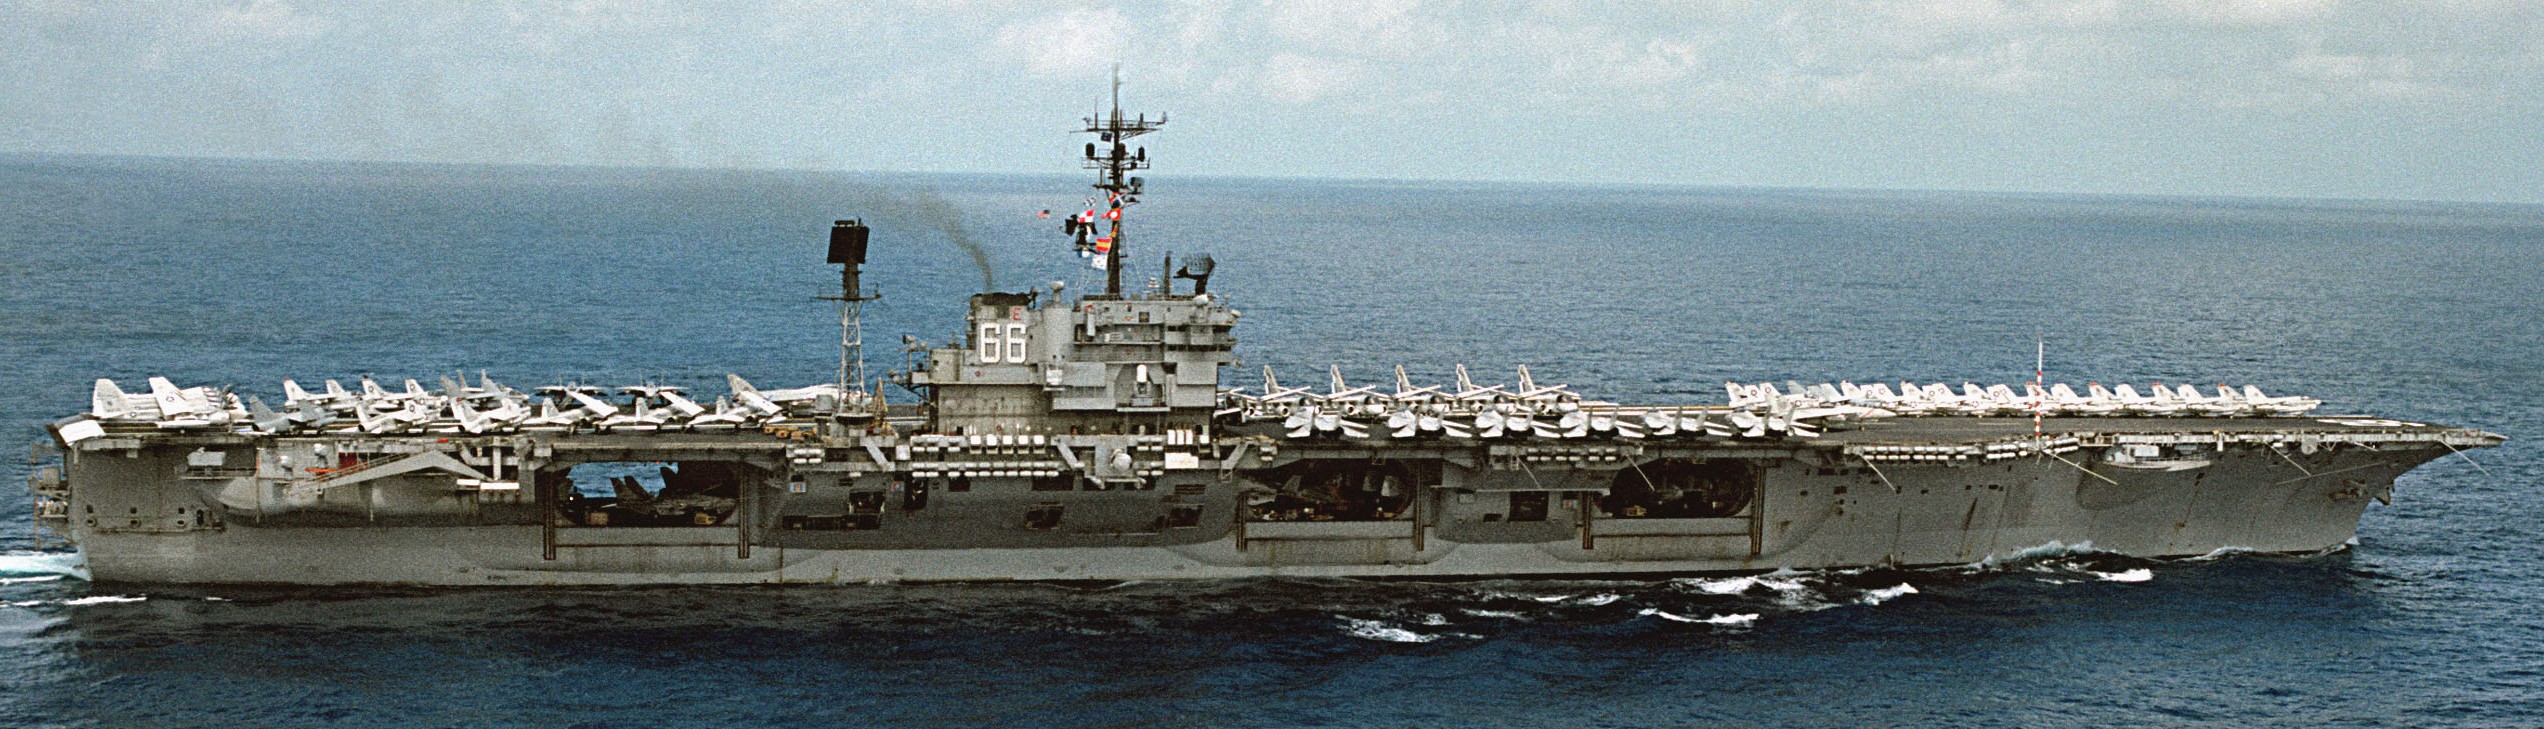 cv-66 uss america kitty hawk class aircraft carrier air wing cvw-1 us navy 60